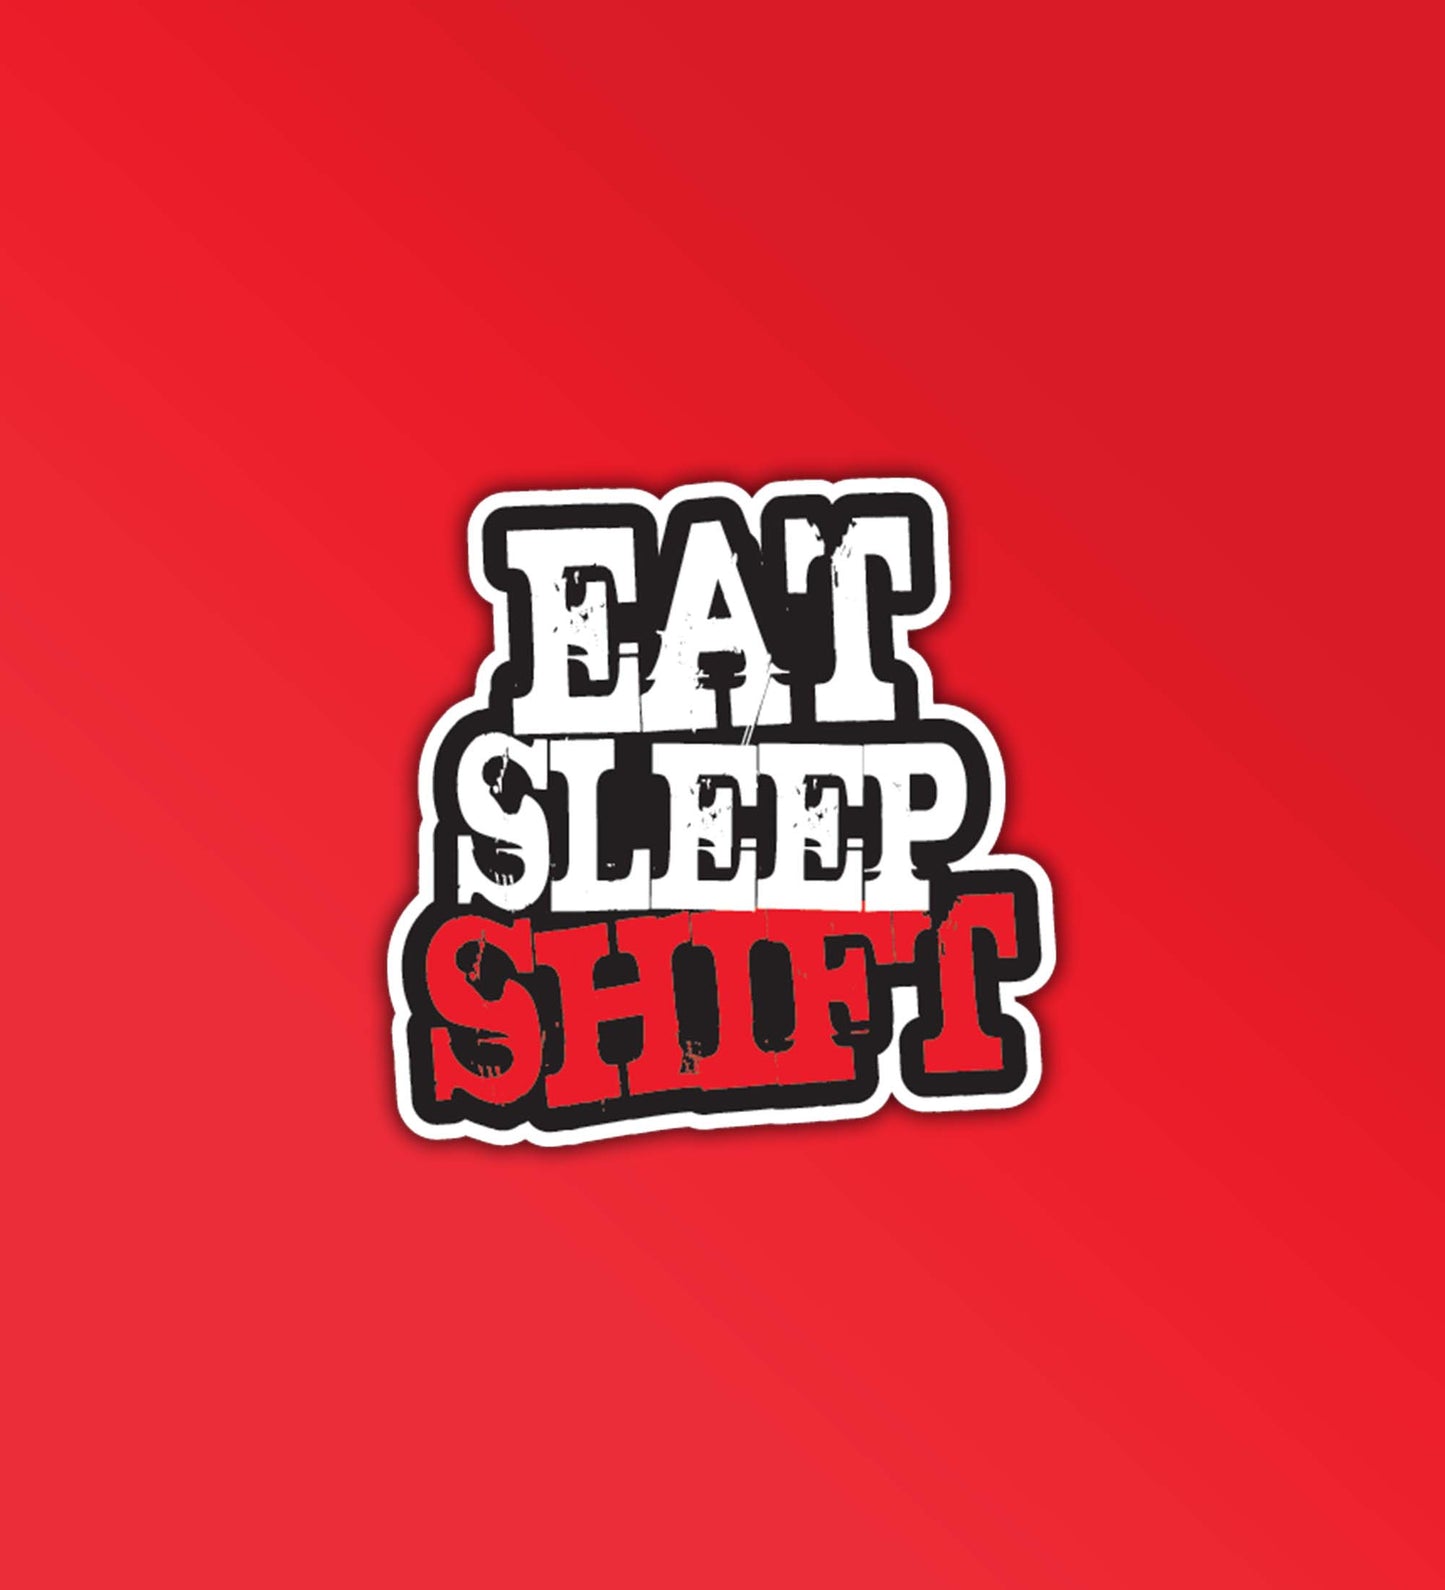 Eat Sleep Drift Sticker